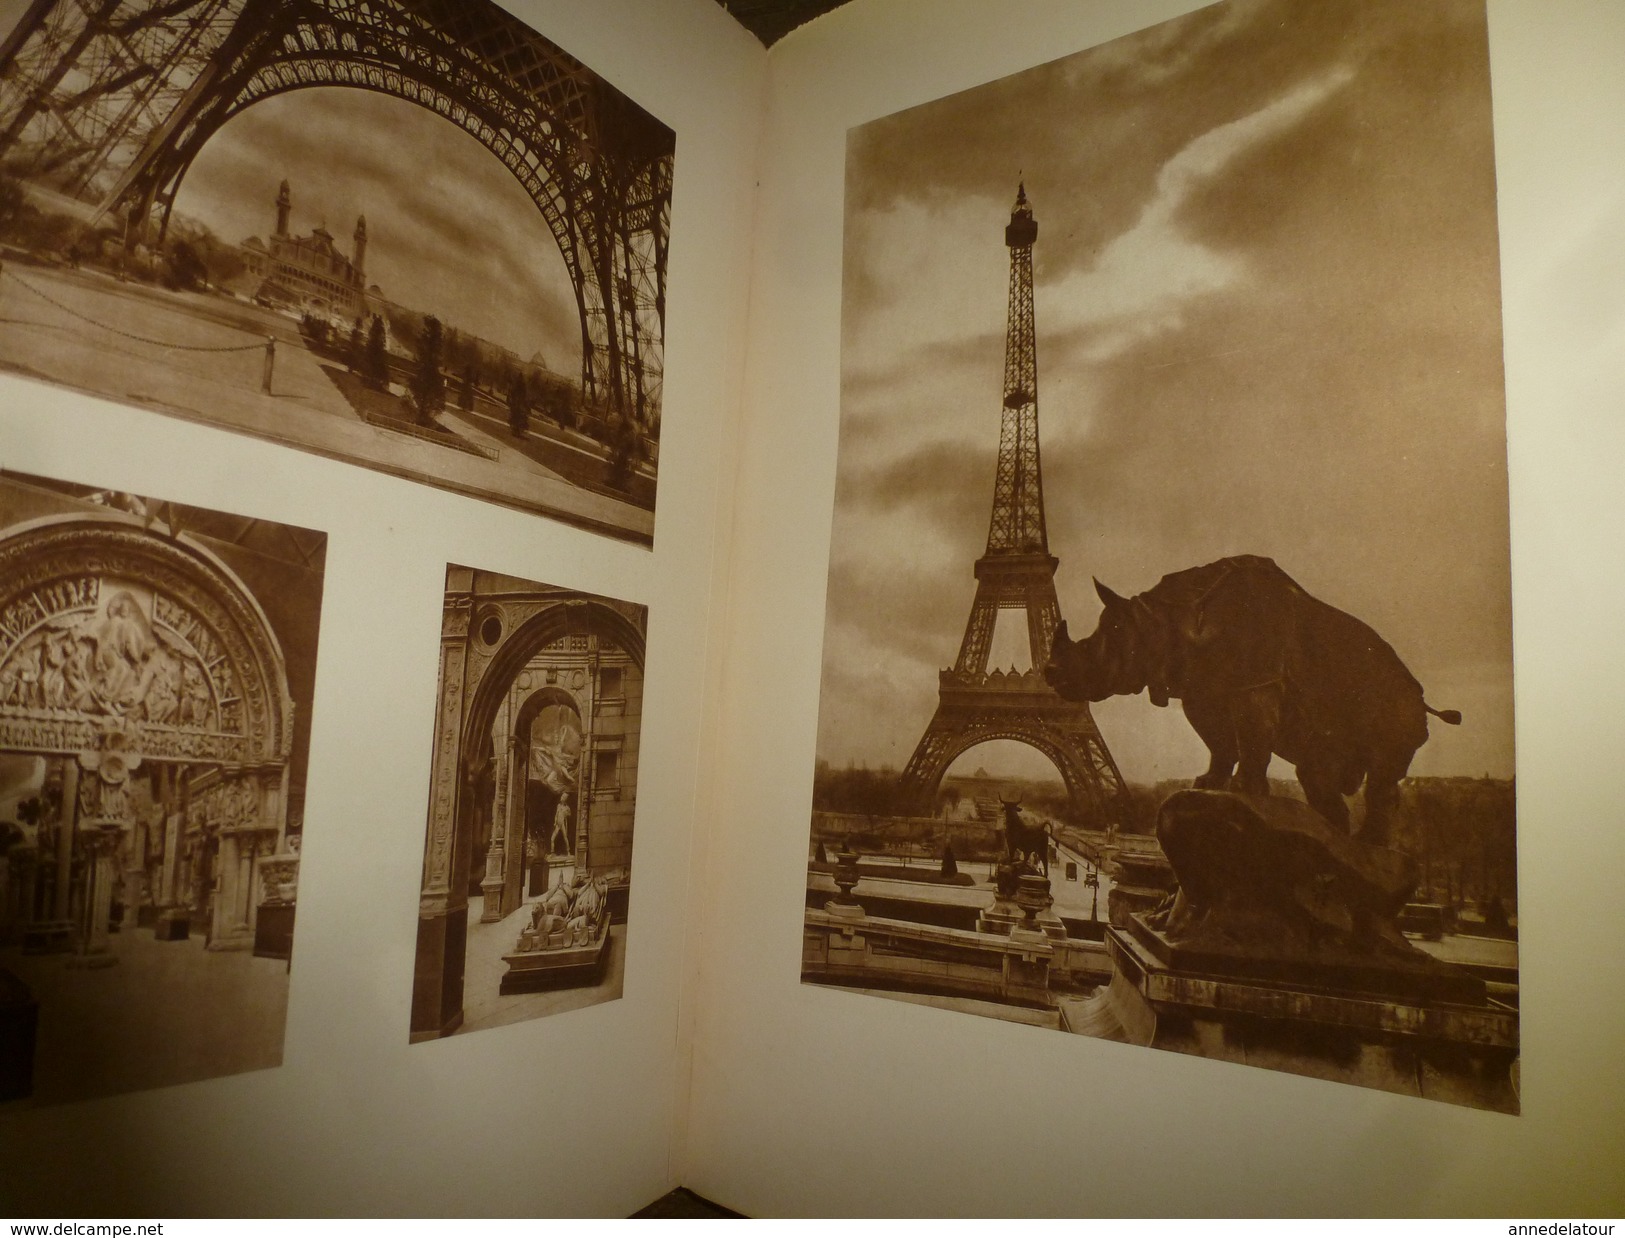 1928 PARIS en 3 ouvrages d'une édition numérotée (important documentaire de textes, photos et gravures signées)